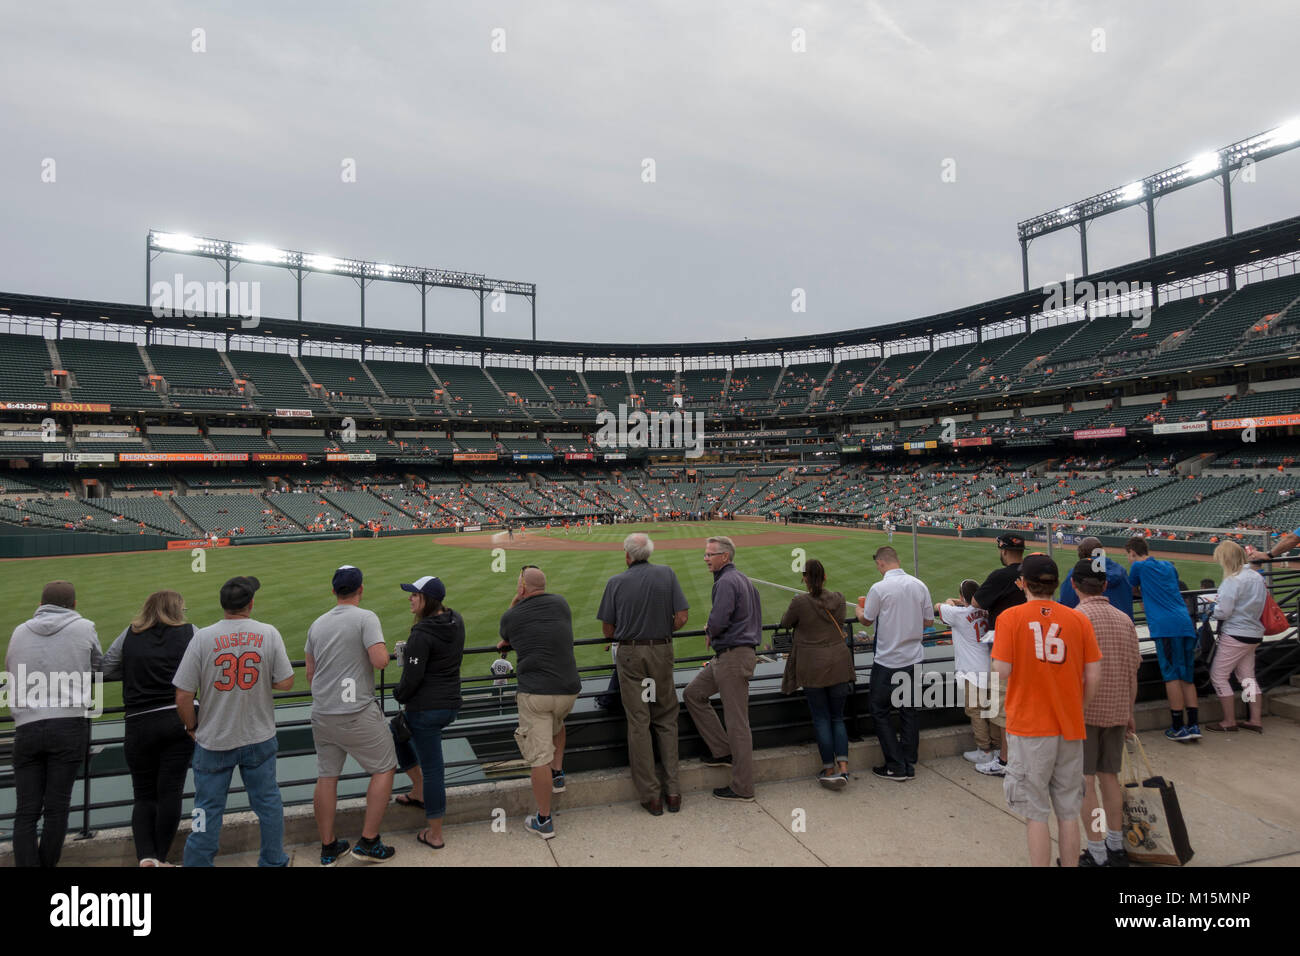 Vor dem Spiel der Lüfter im Innern Oriole Park at Camden Yards, die Heimat der Baltimore Orioles Major League Baseball Team in Baltimore, Maryland, USA. Stockfoto